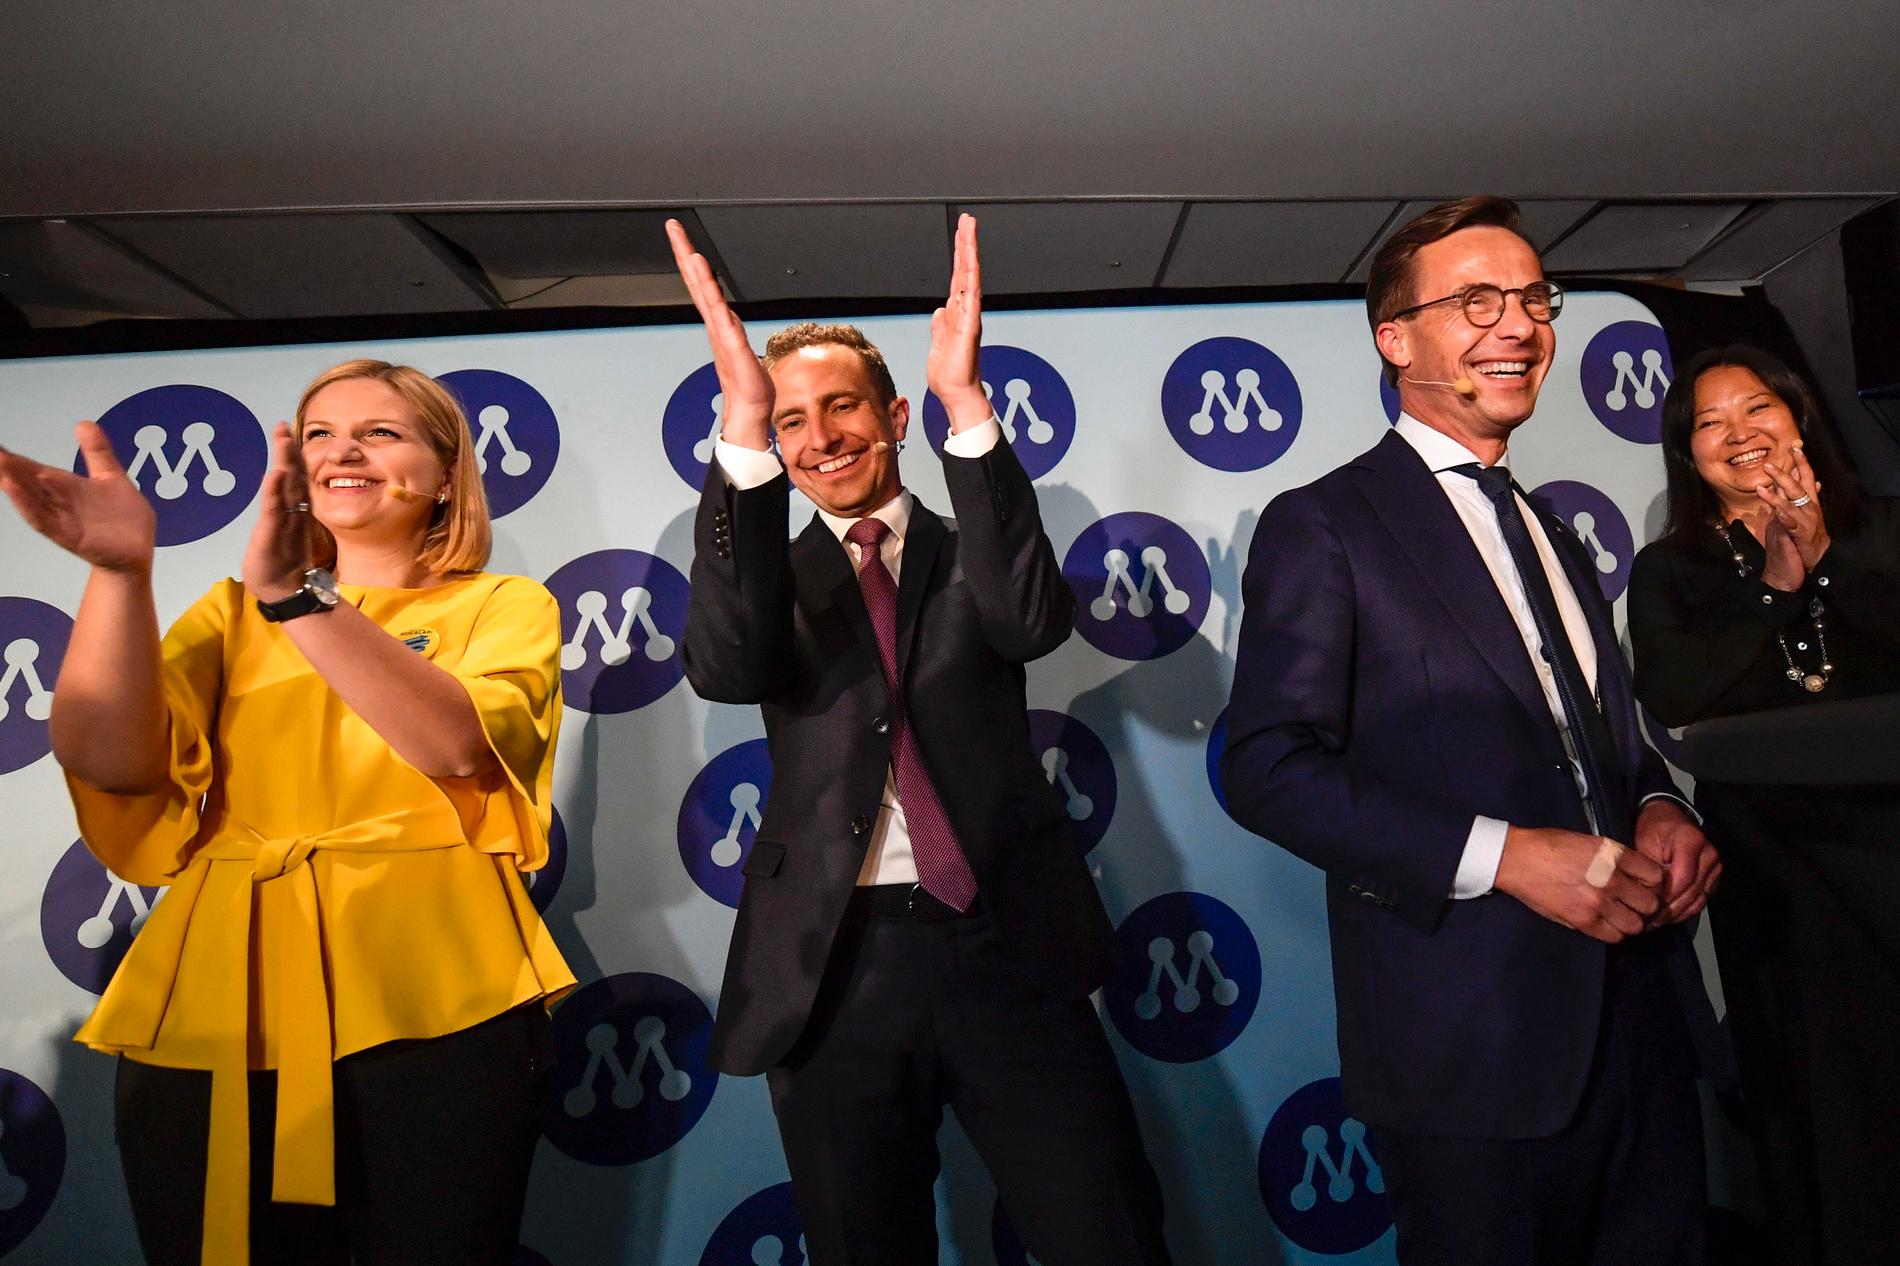 Arba Kokalari, Tomas Tobé och Ulf Karlsson är nöjda efter det preliminära valresultatet under Moderaternas valvaka på Clarion Sign Hotell.